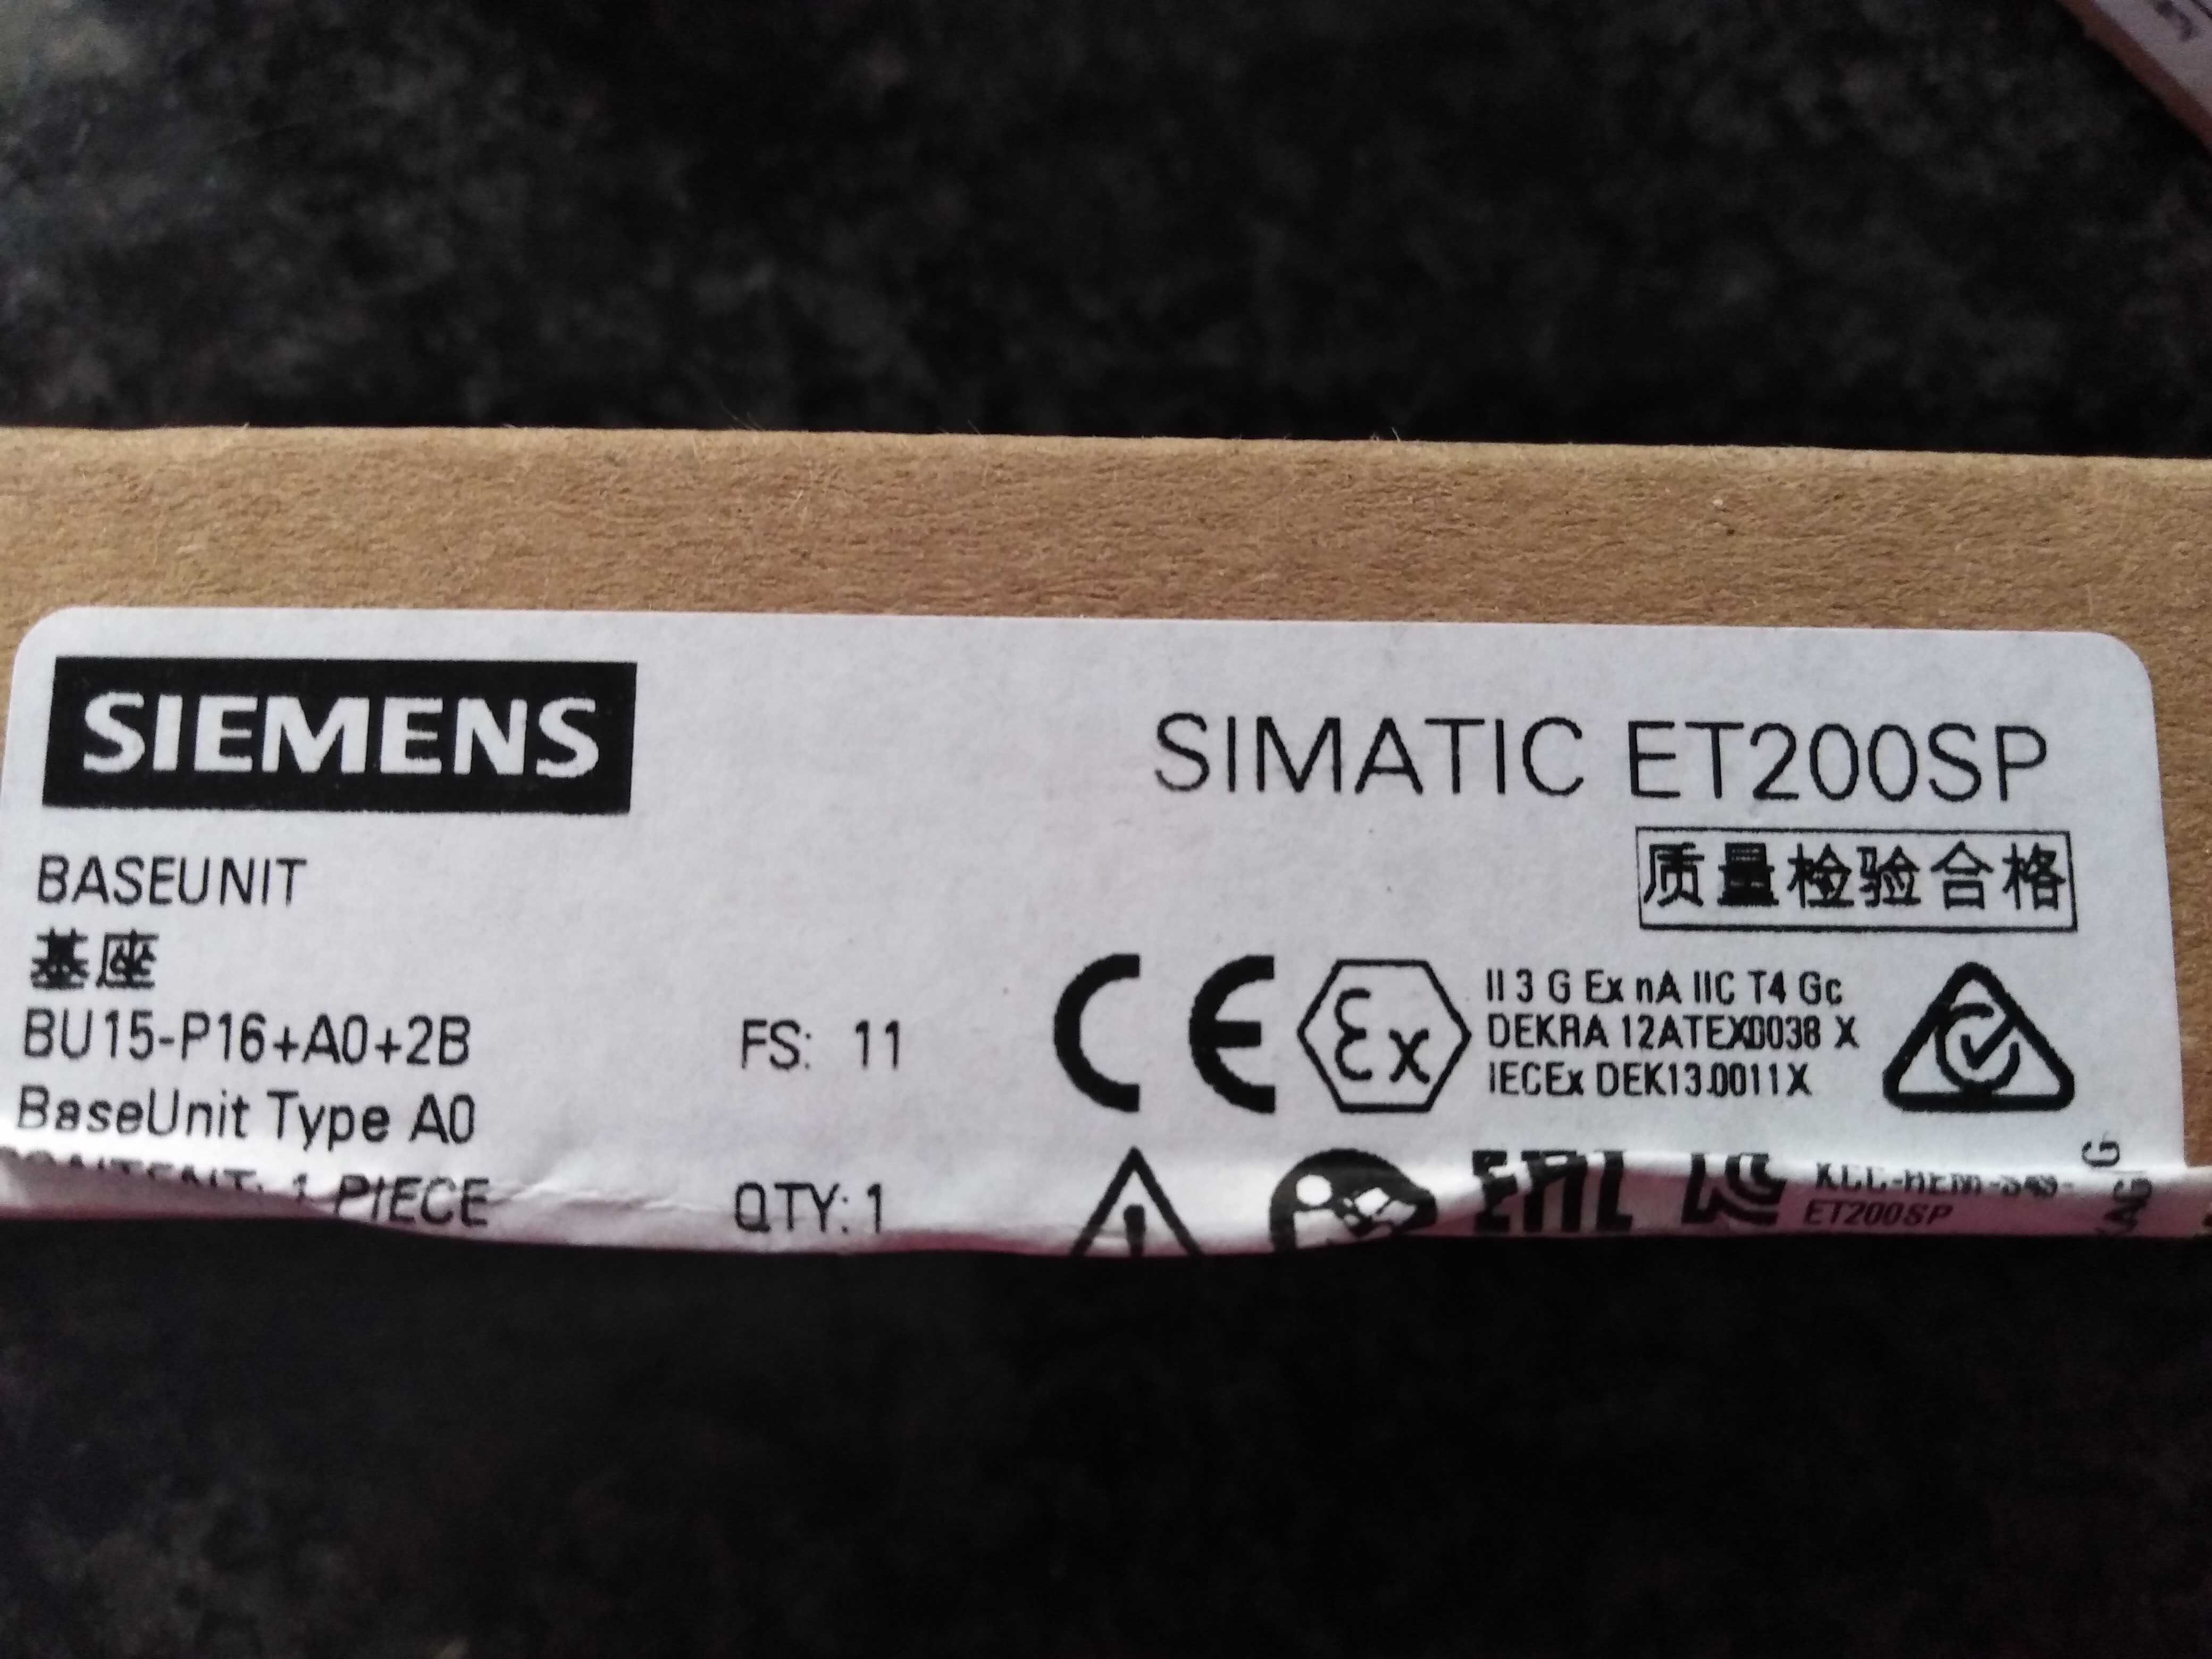 Siemens - Base Unit BU15-P16+A0+2D